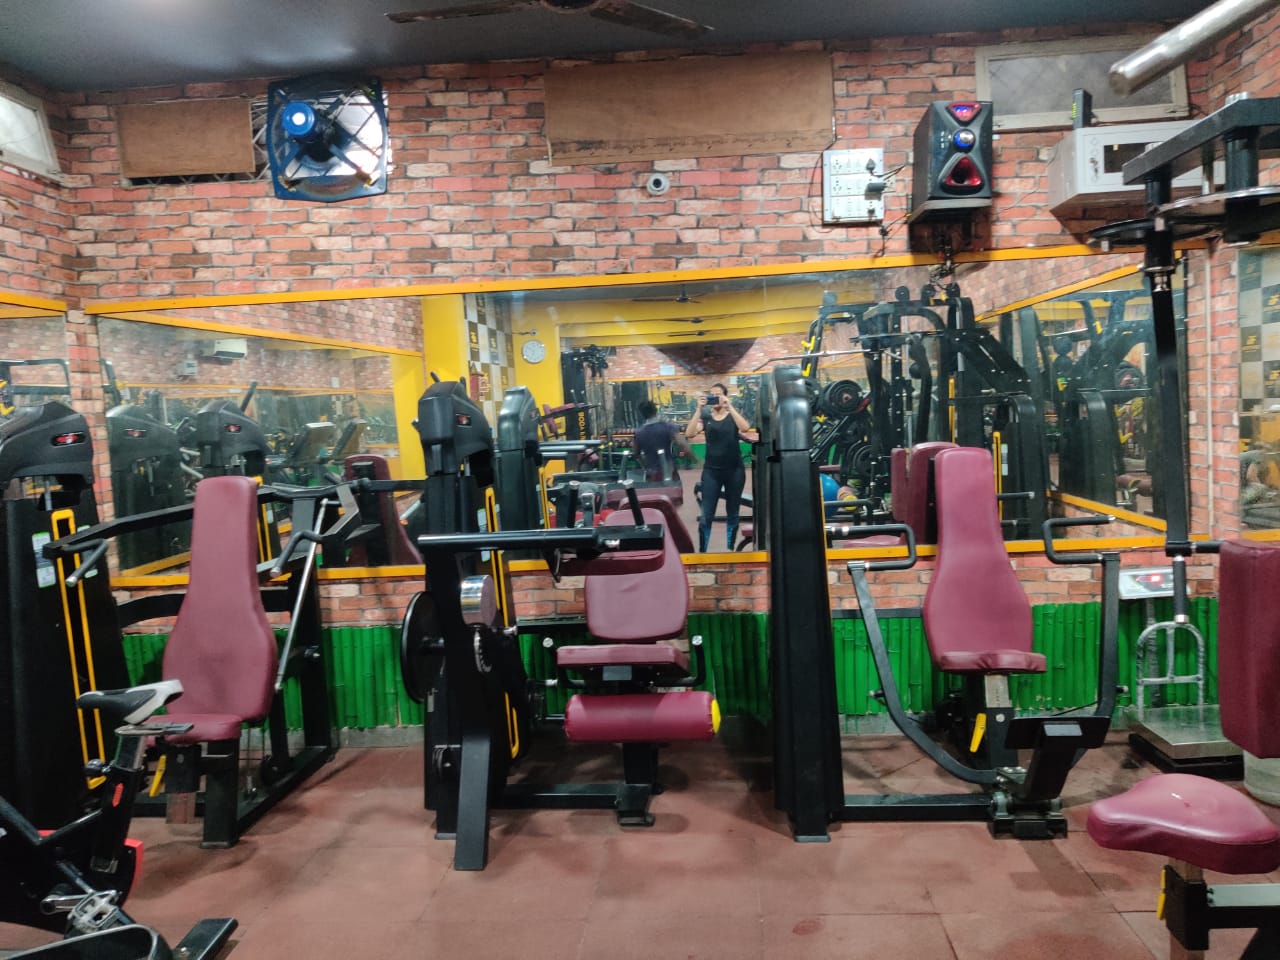 Noida-Sector-20-Body-first-gym_959_OTU5_MTEyODA